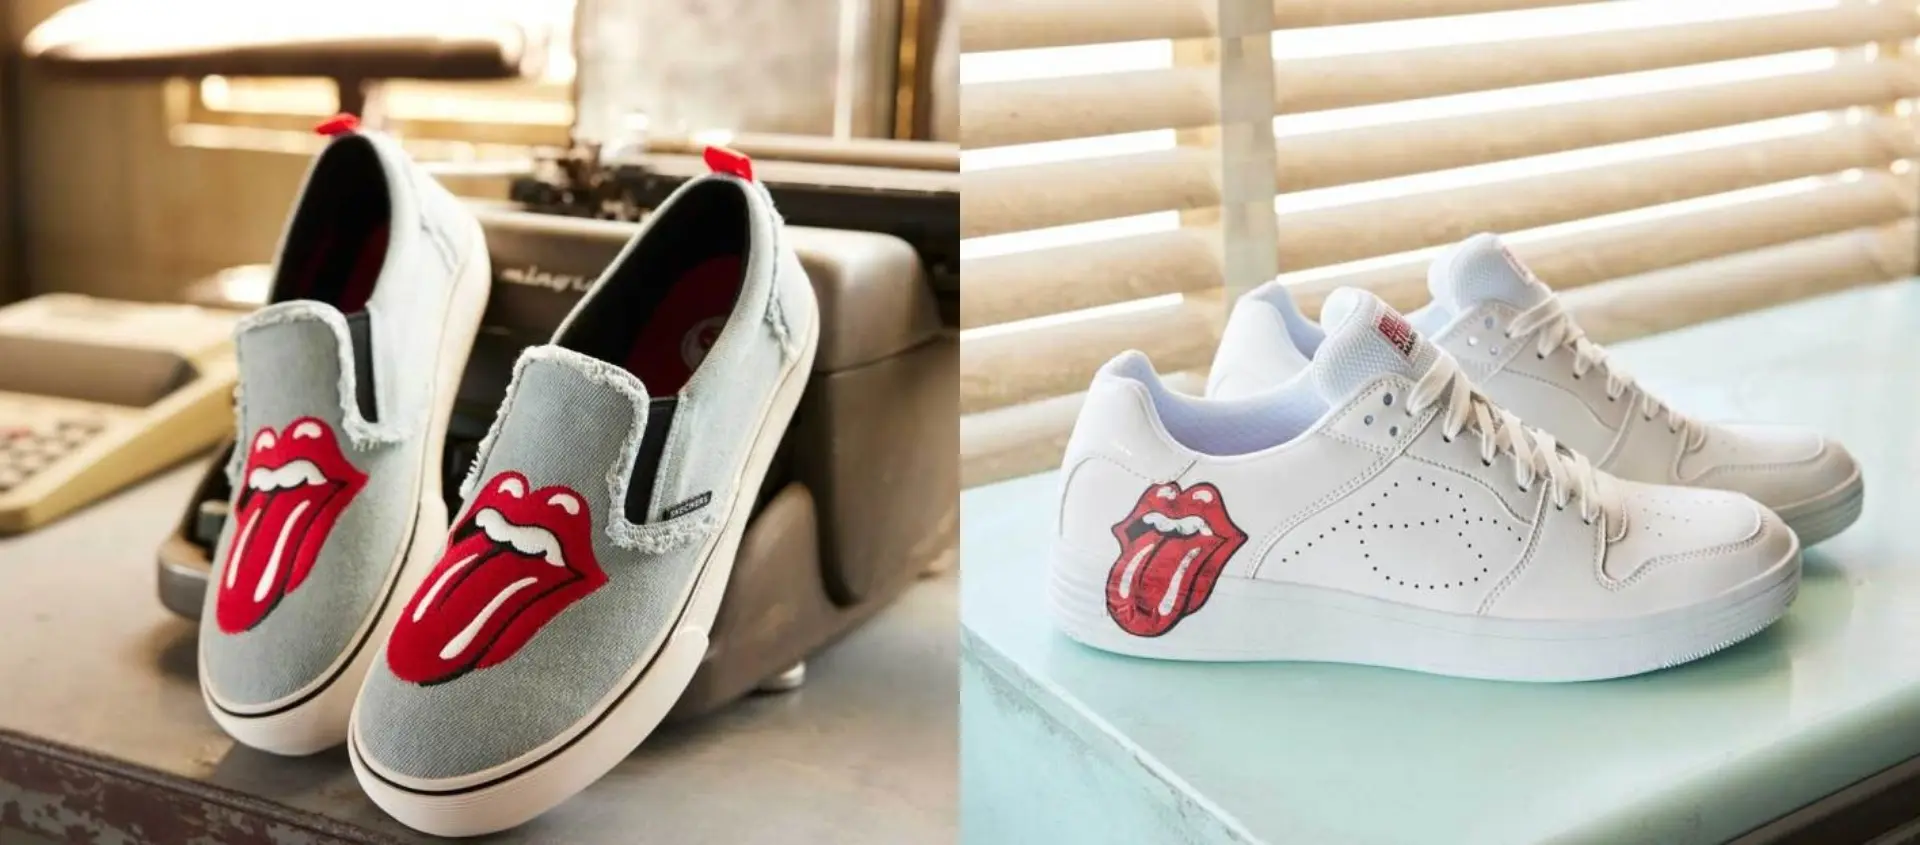 La revista The Rolling Stones presentó su colección de zapatillas